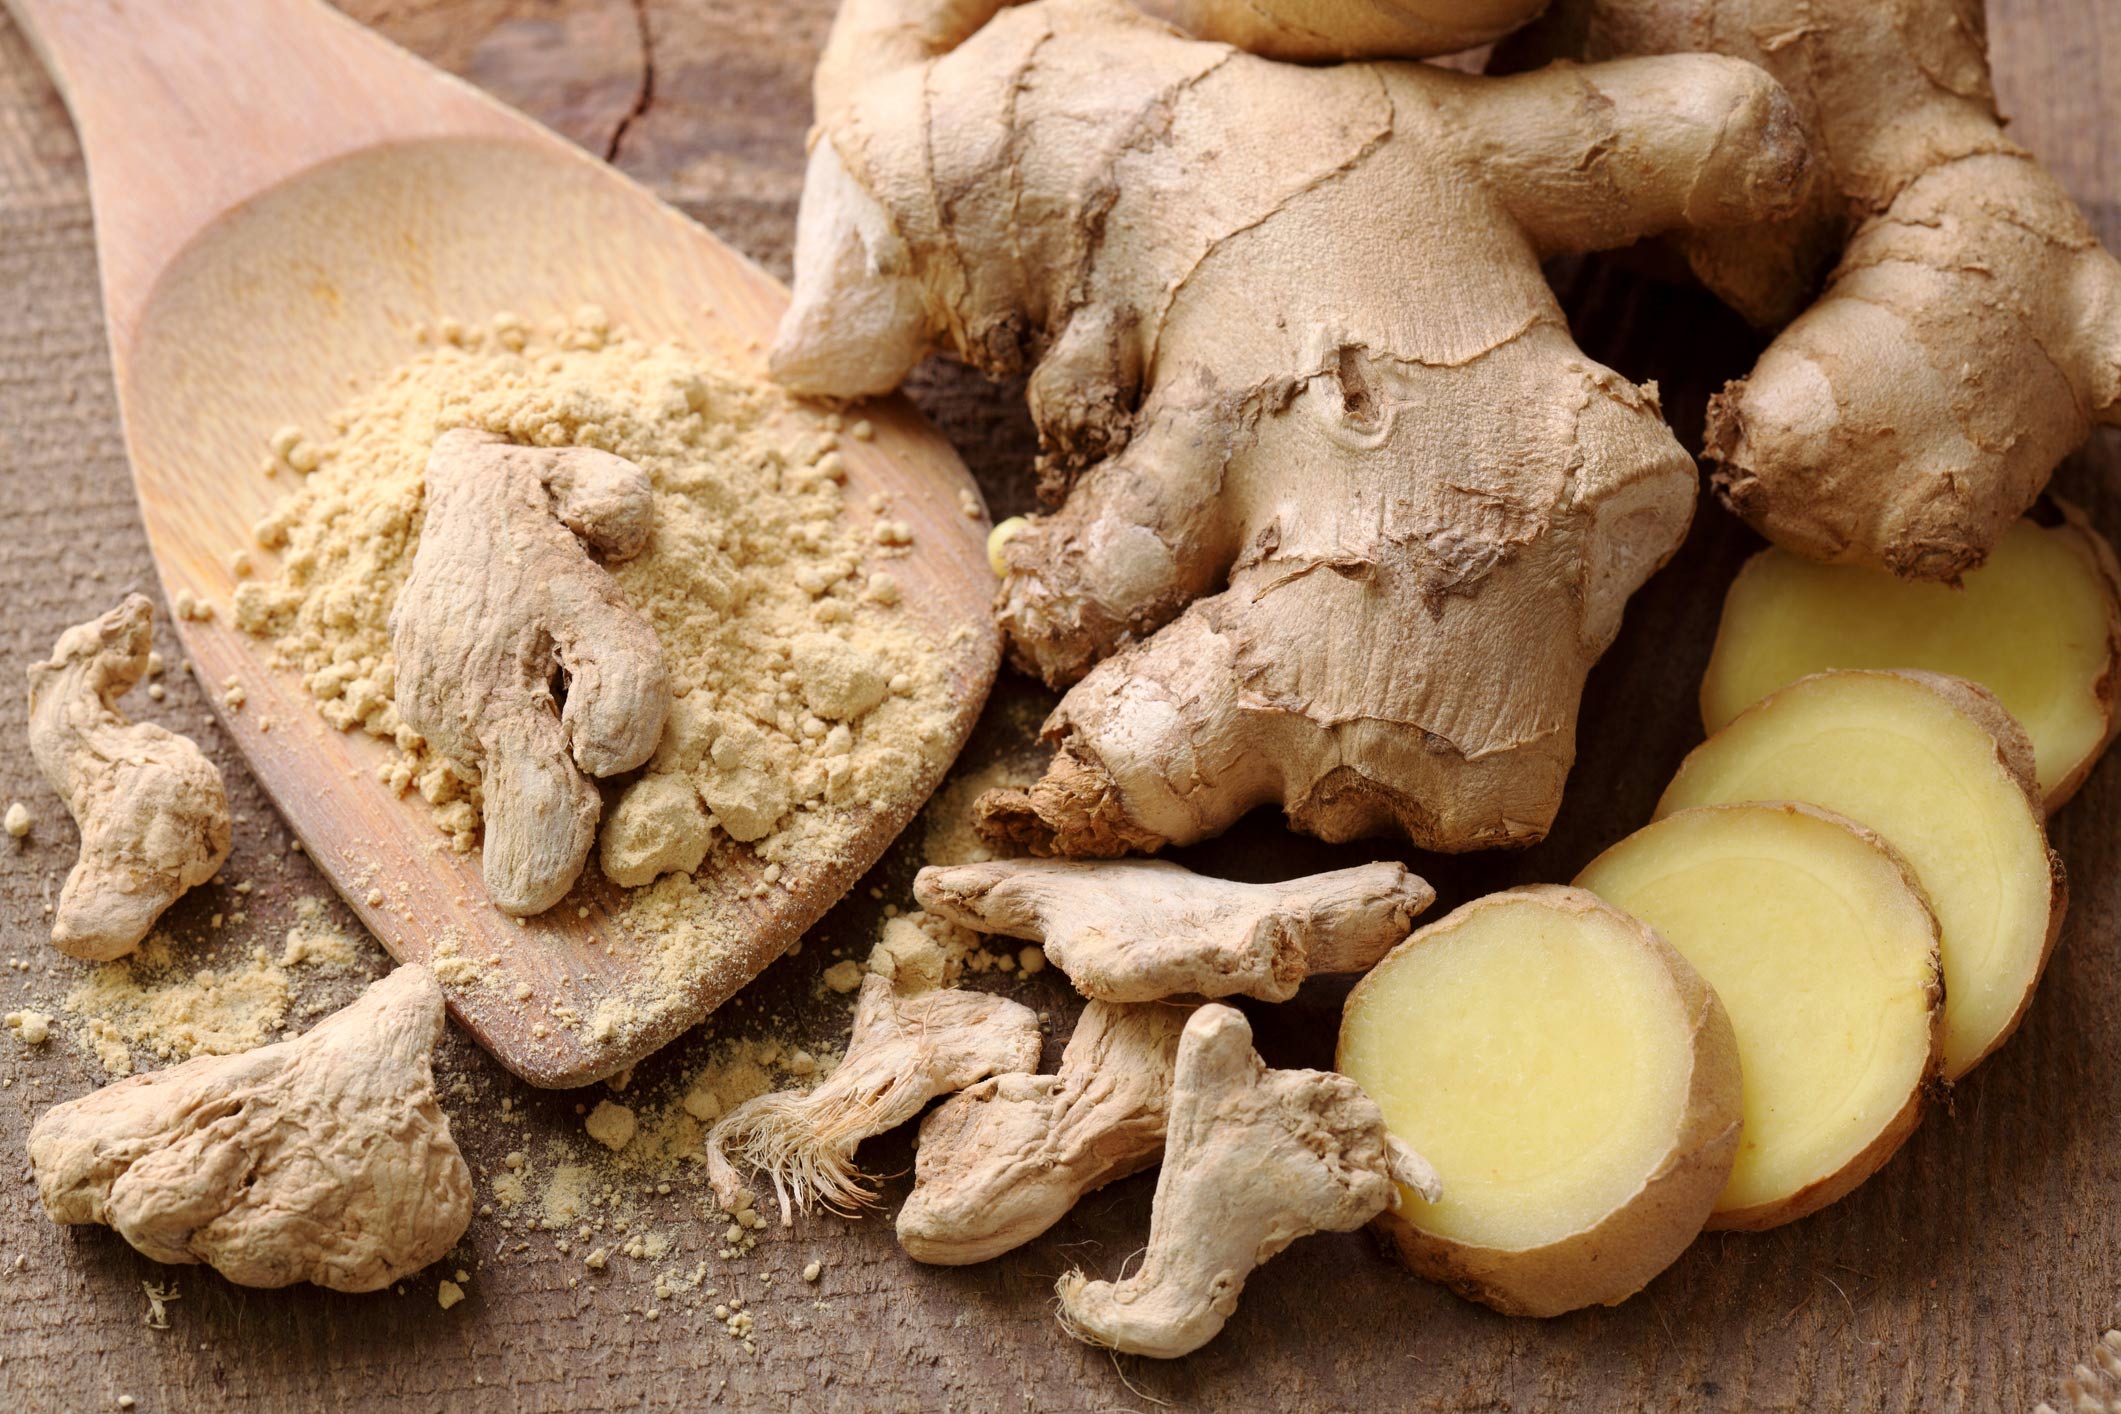 Top detoxifying foods: Ginger